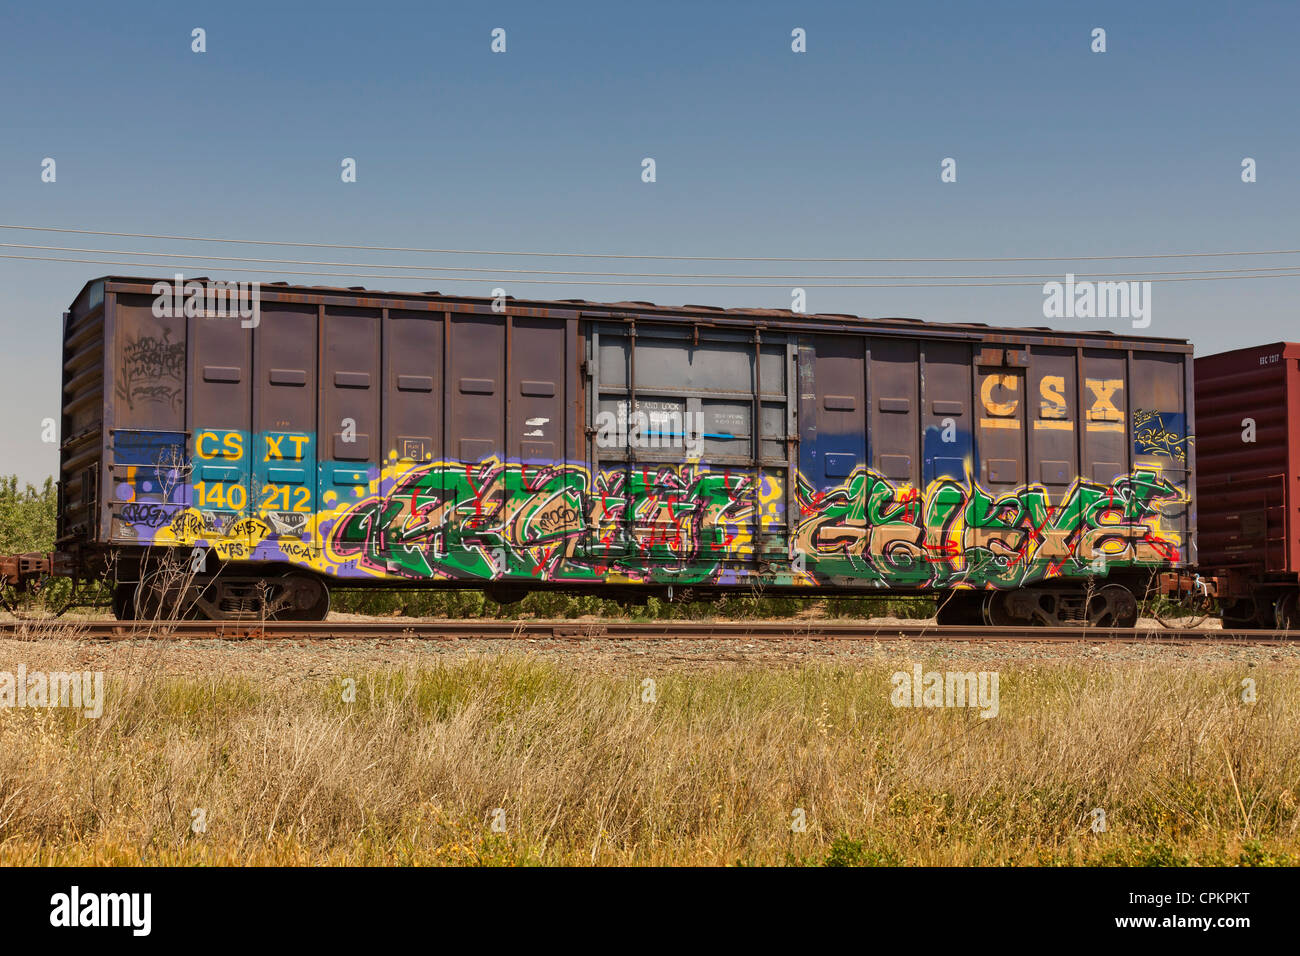 Voitures de train vandalisé avec graffiti - USA Banque D'Images